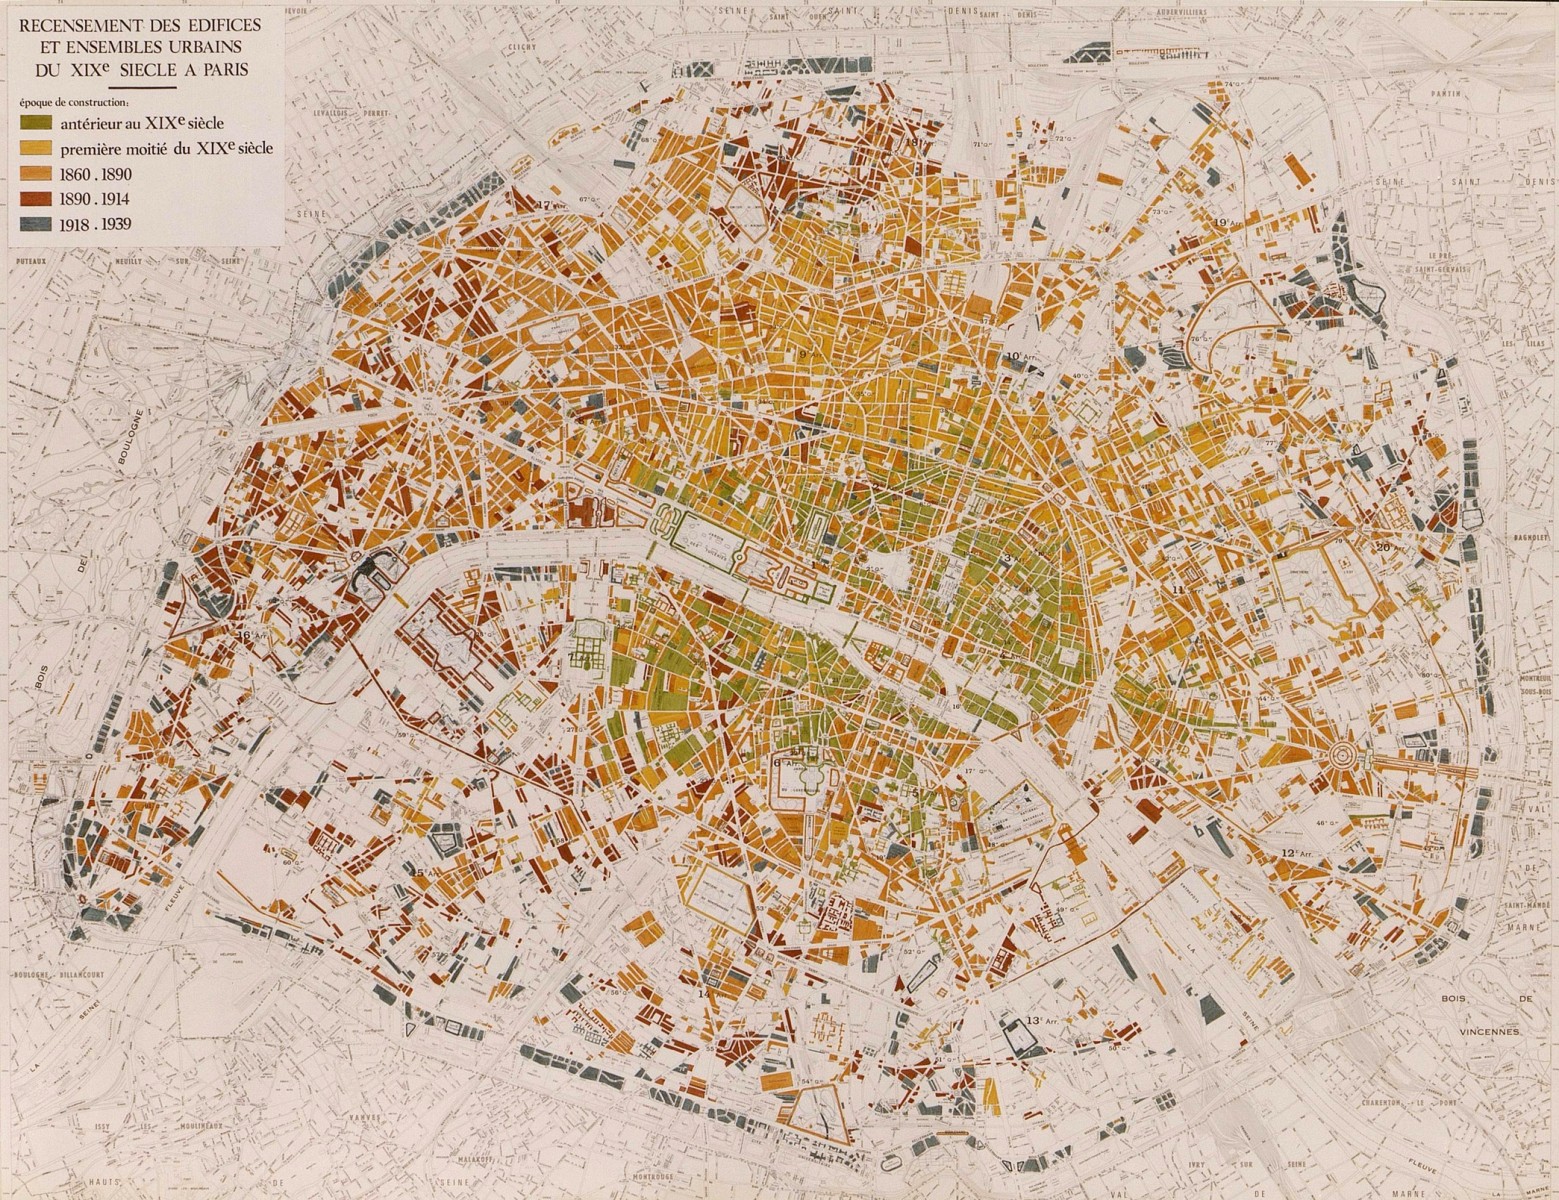 Carte sur le recensement des édifices et ensembles urbains du XIXe siècle à Paris © Apur